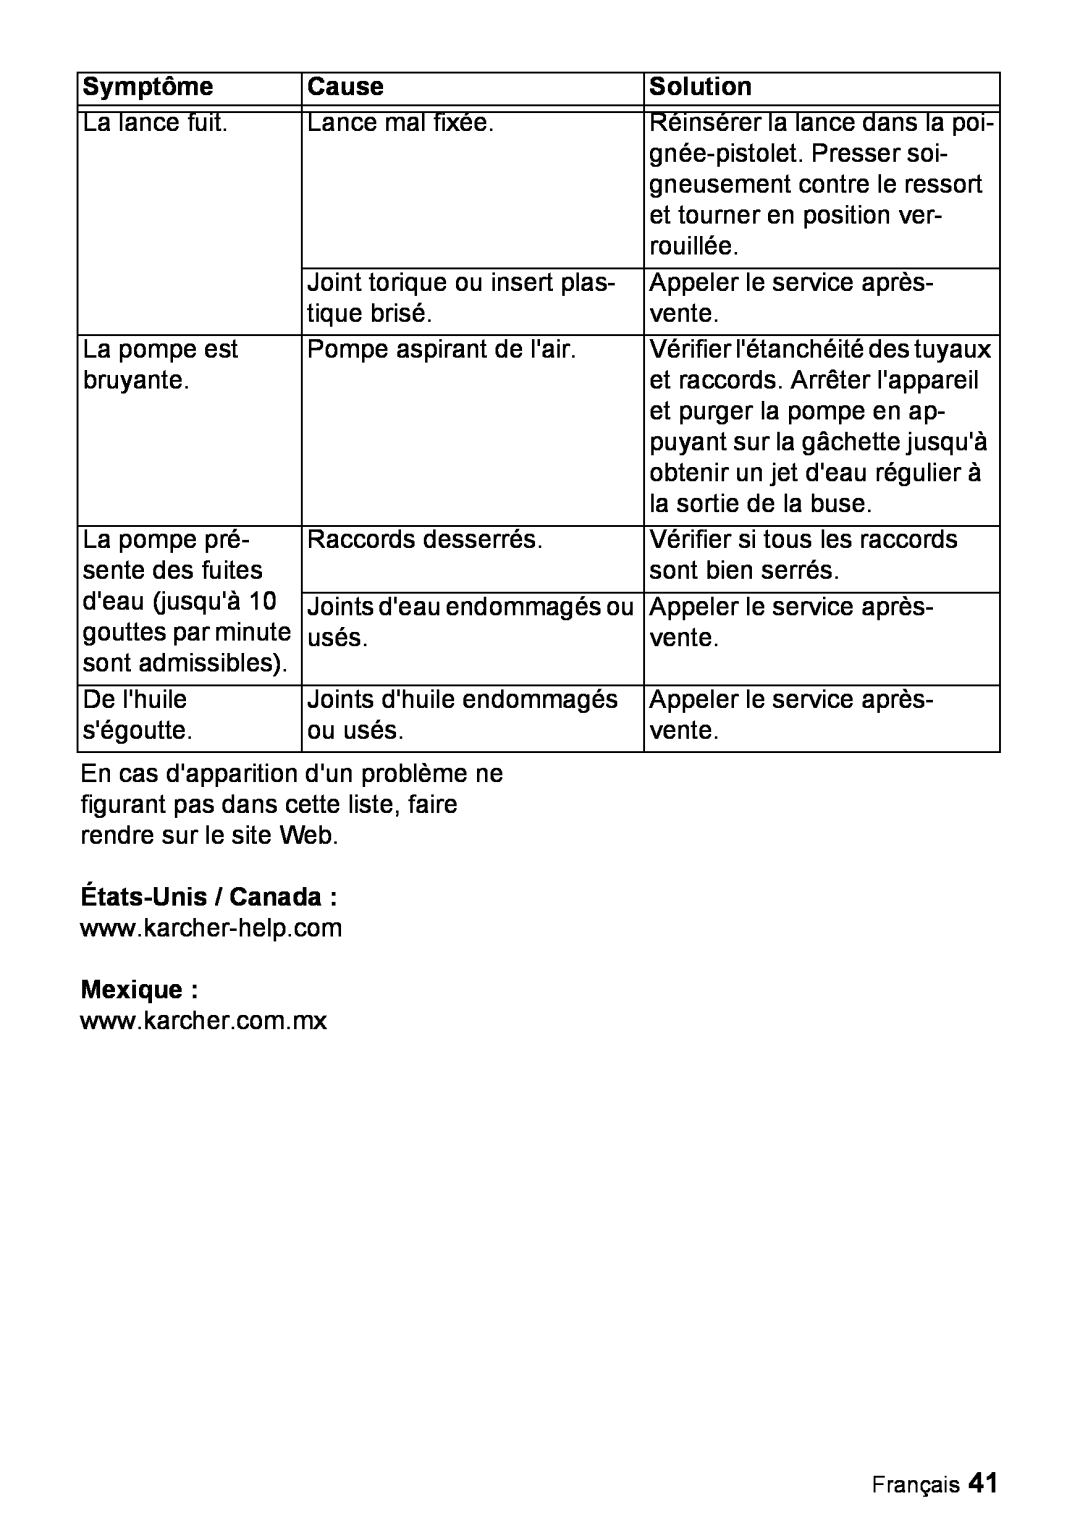 Karcher K 3.540 manuel dutilisation États-Unis /Canada, Mexique, Symptôme, Cause, Solution 